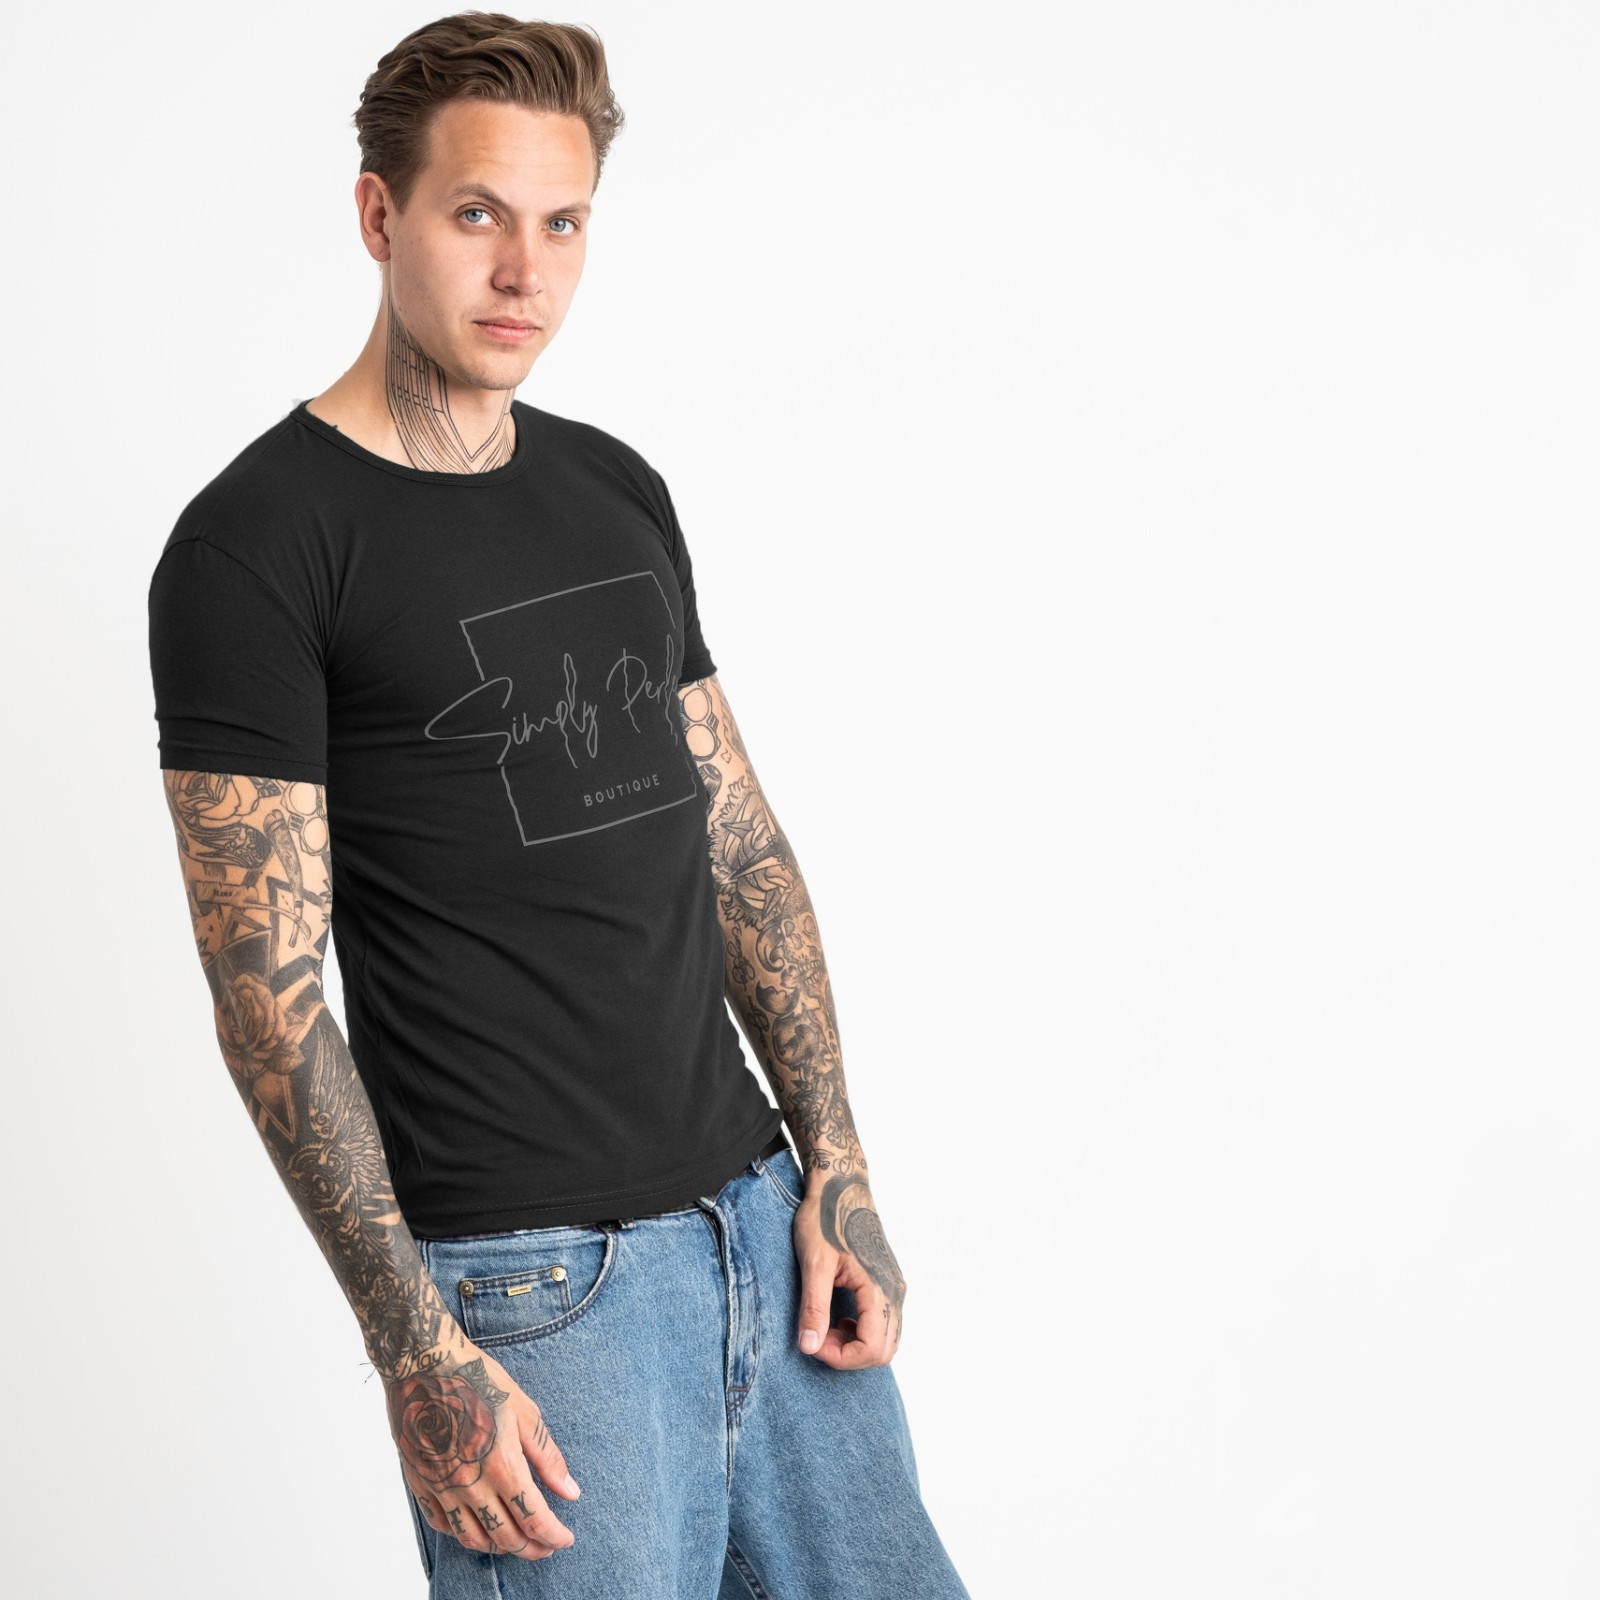 2603-1 черная футболка мужская с принтом (4 ед. размеры: M.L.XL.2XL)